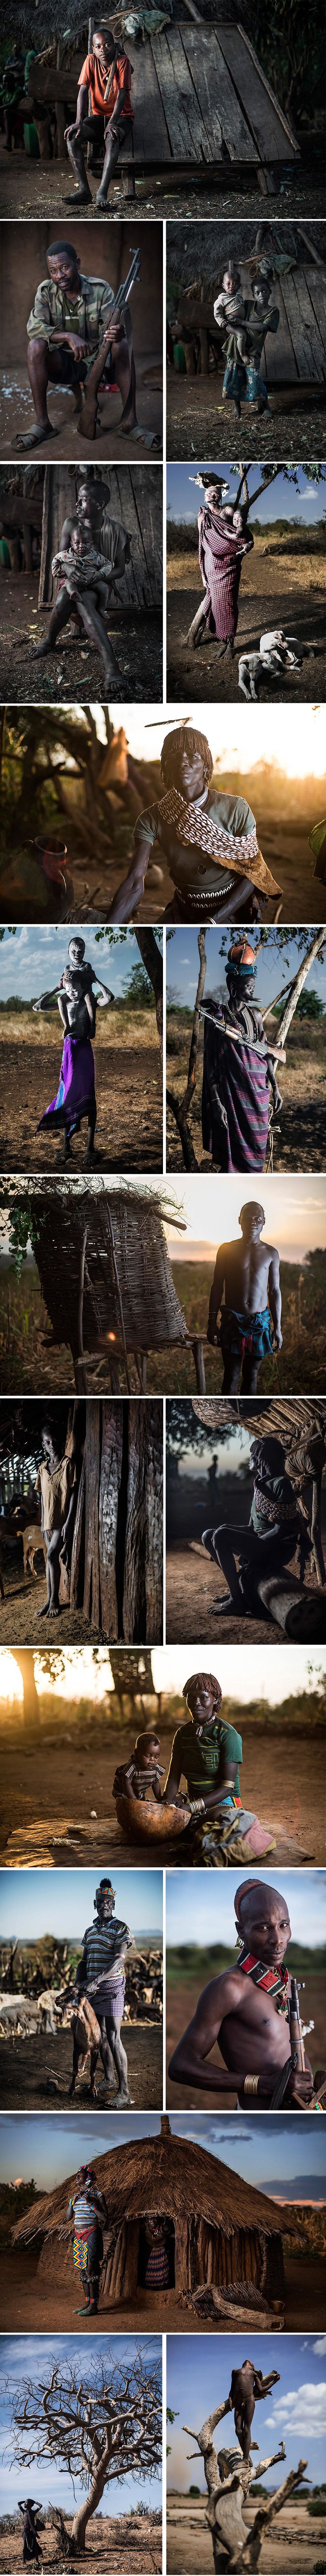 Ảnh đẹp về bộ lạc Omo Valley, Ethiopia